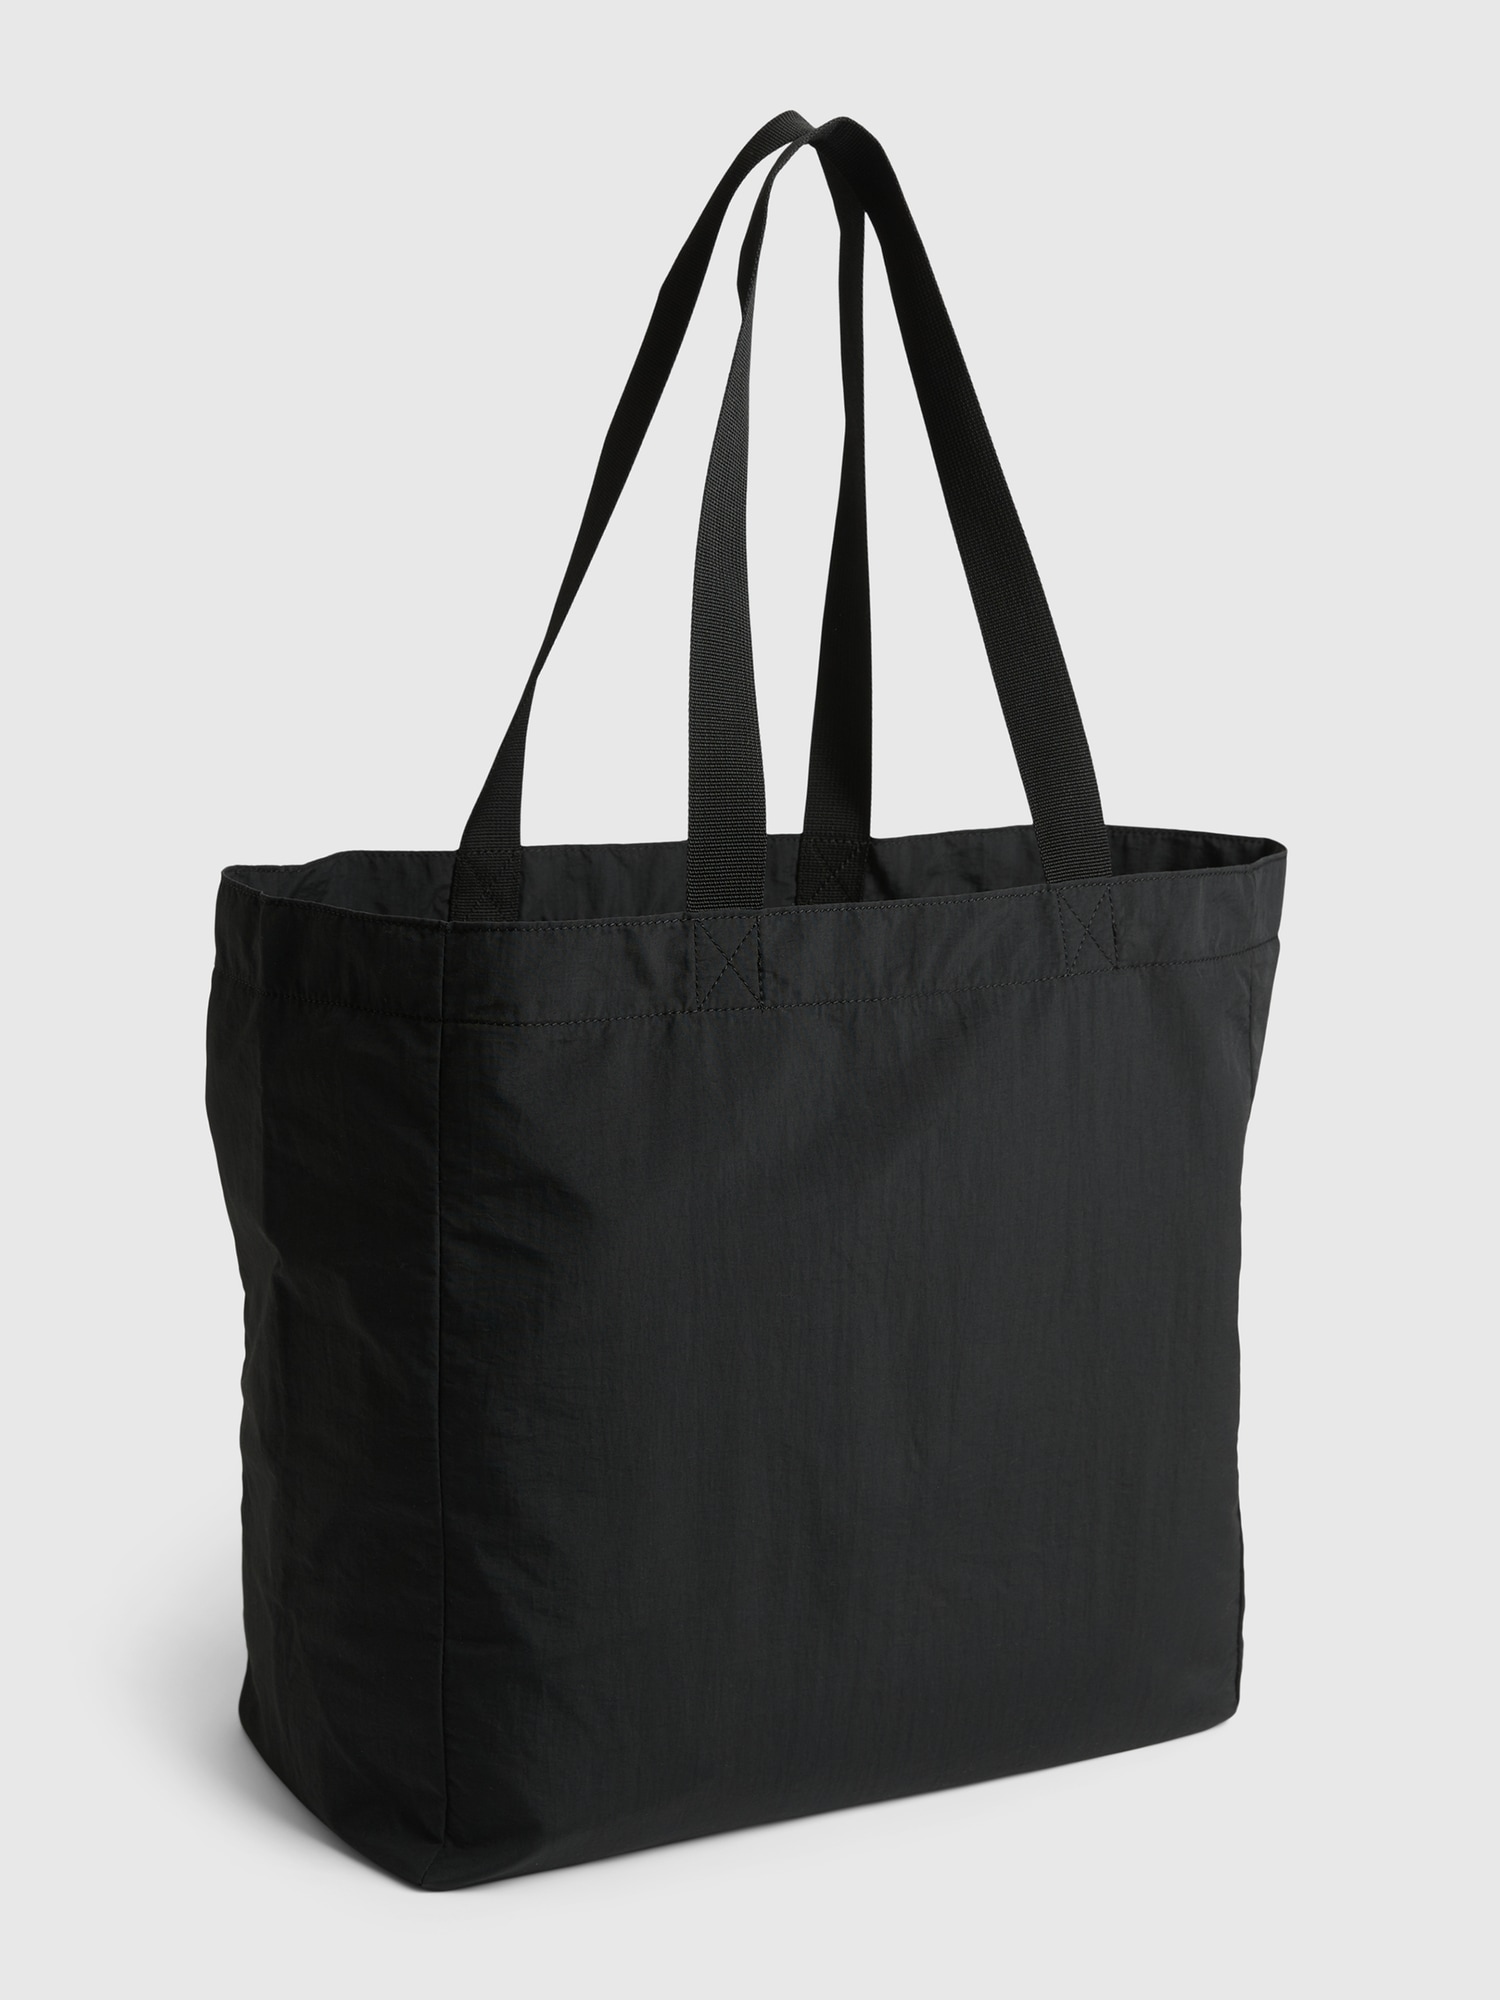 Gap Men's Nylon Tote Bag